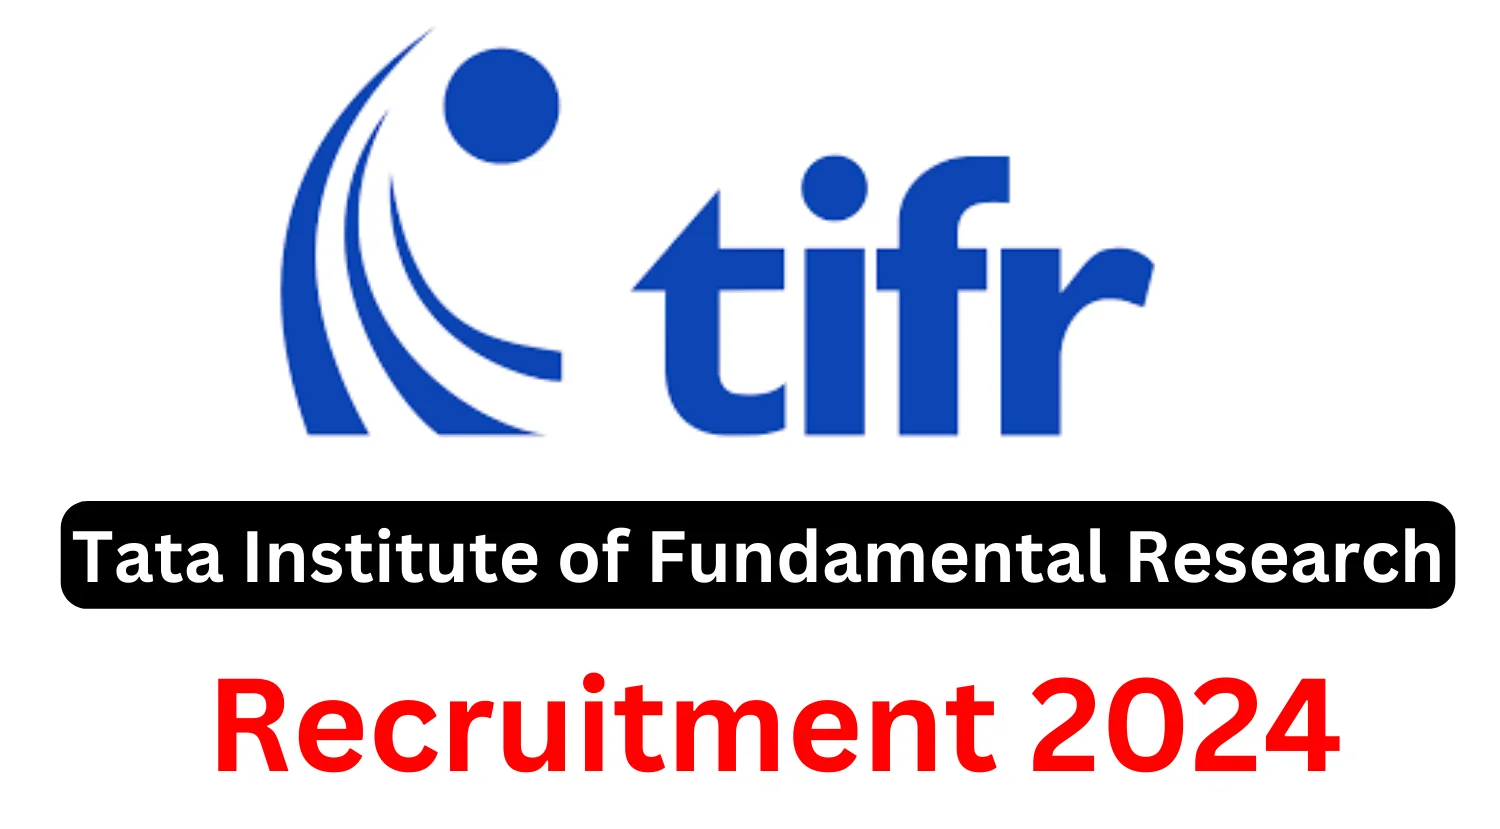 TIFR Recruitment 2024